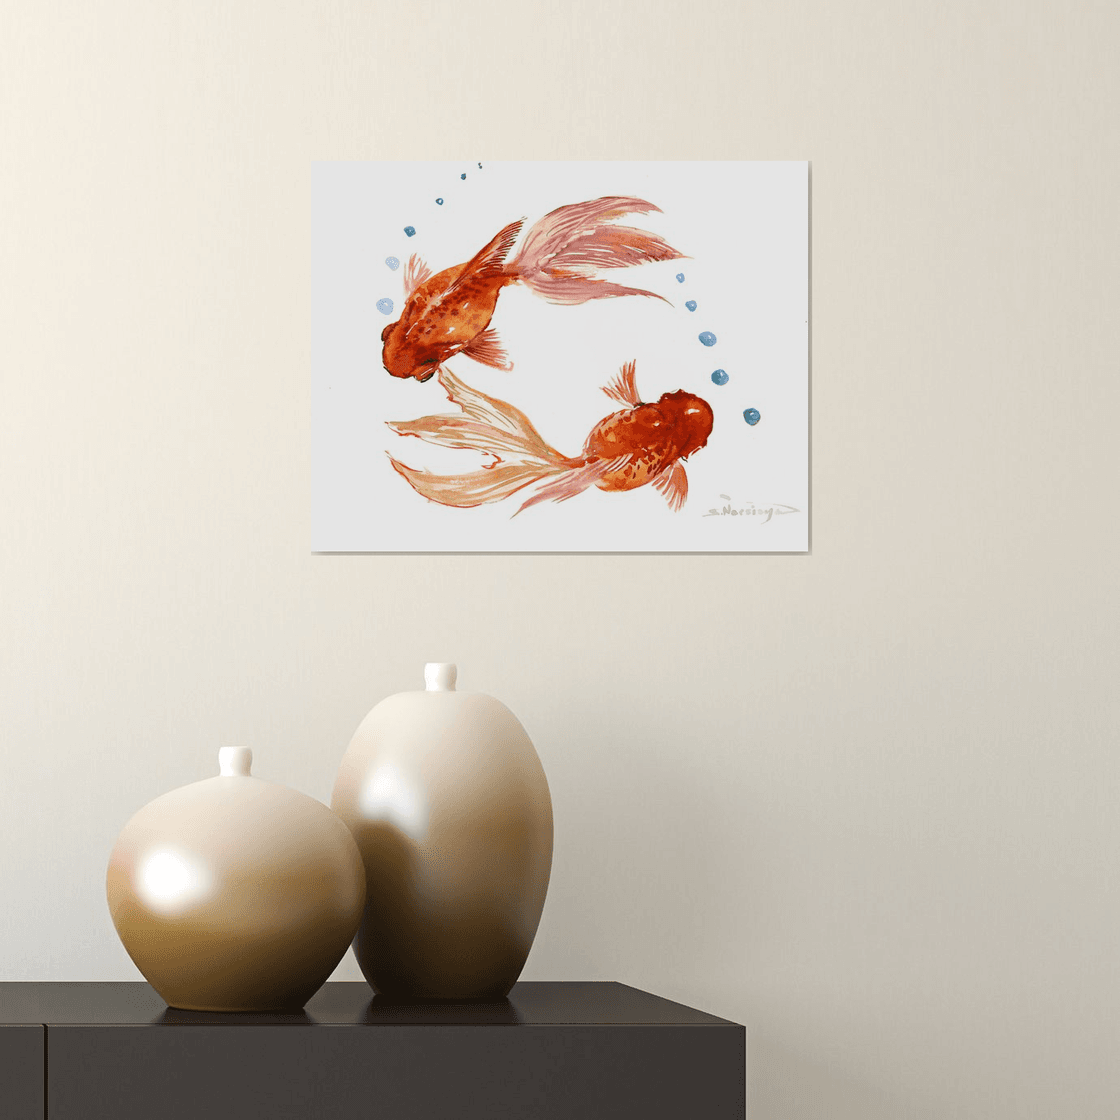 Two Koi Fish, Feng Shui art Shower Curtain by Suren Nersisyan